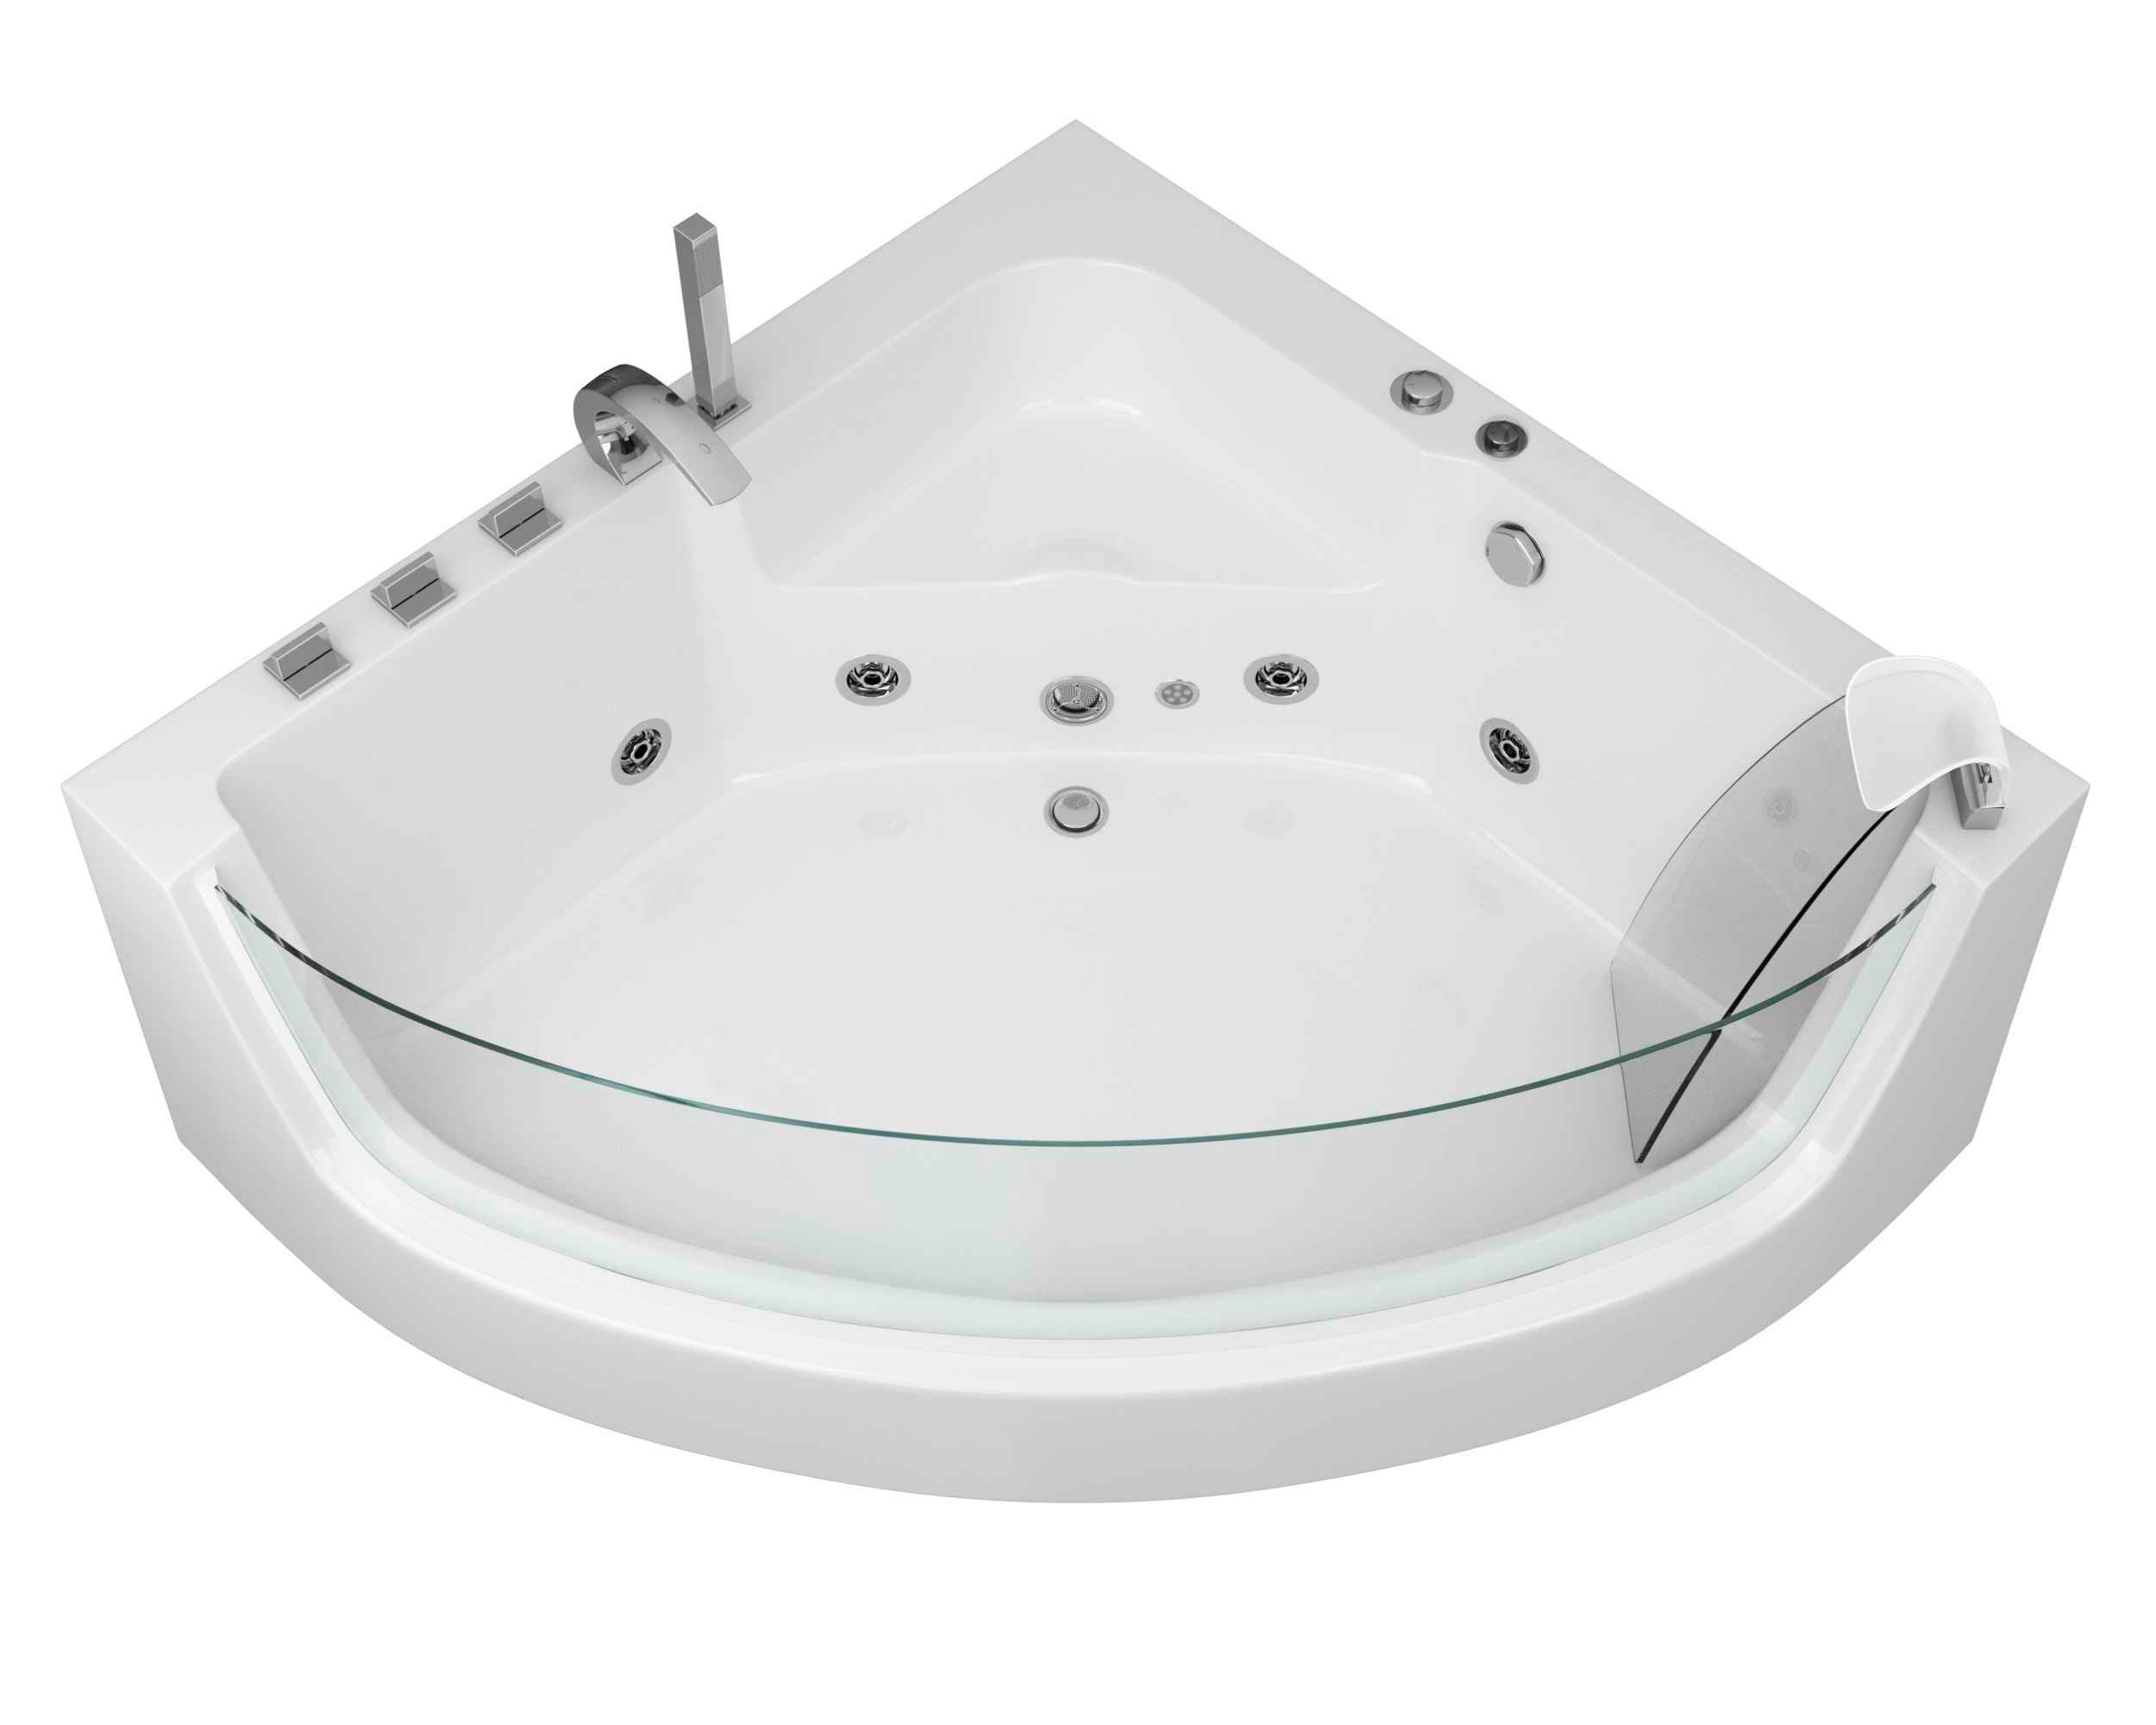 Гидромассажная ванна Grossman 150x150 GR-15000-1 с гидромассажем, размер 150х150, цвет белый